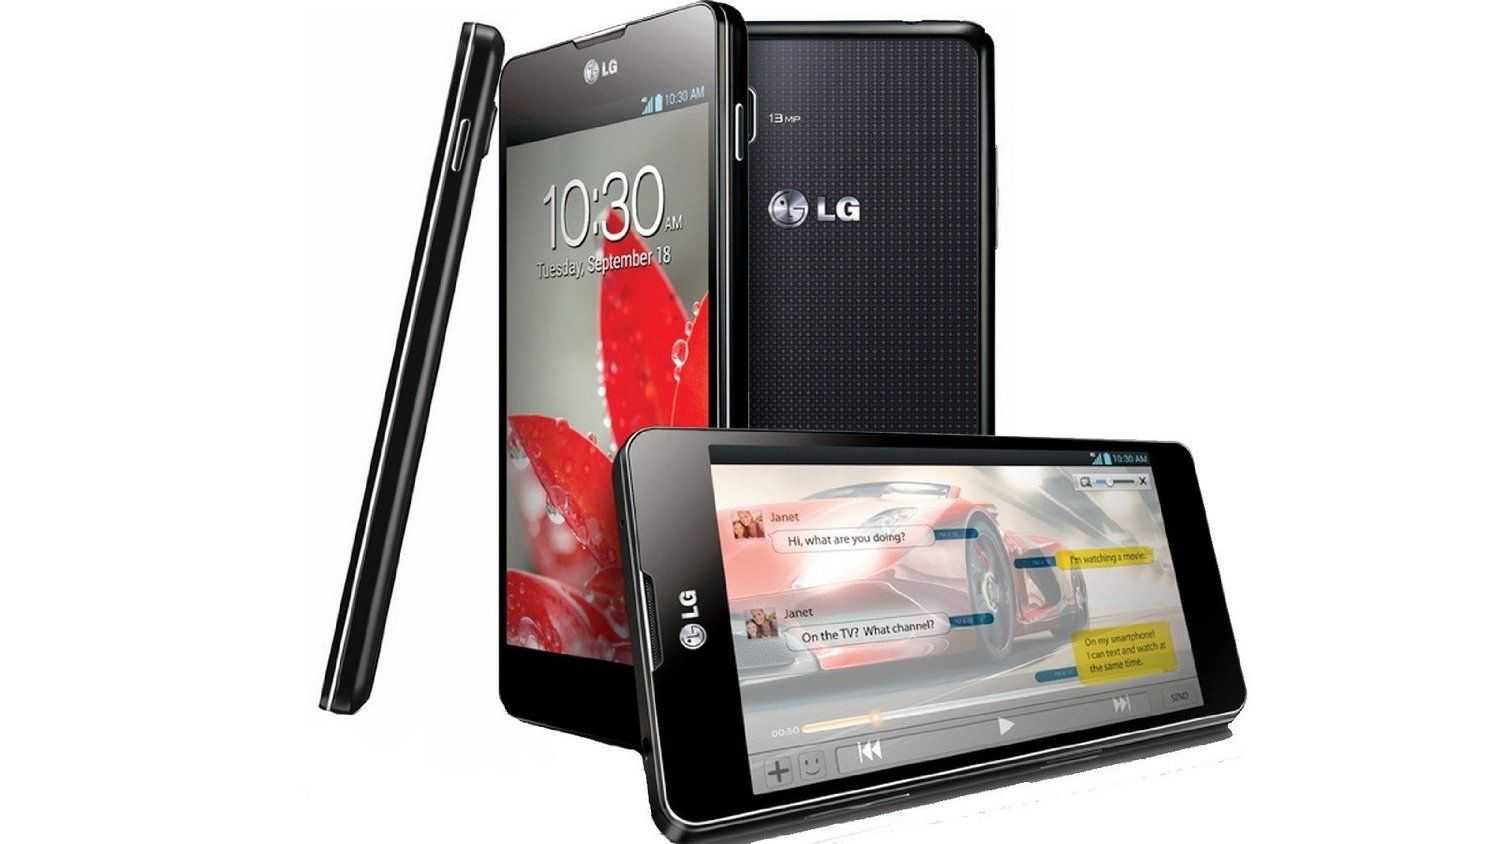 Lg optimus g pro e988 (черный) - купить , скидки, цена, отзывы, обзор, характеристики - мобильные телефоны